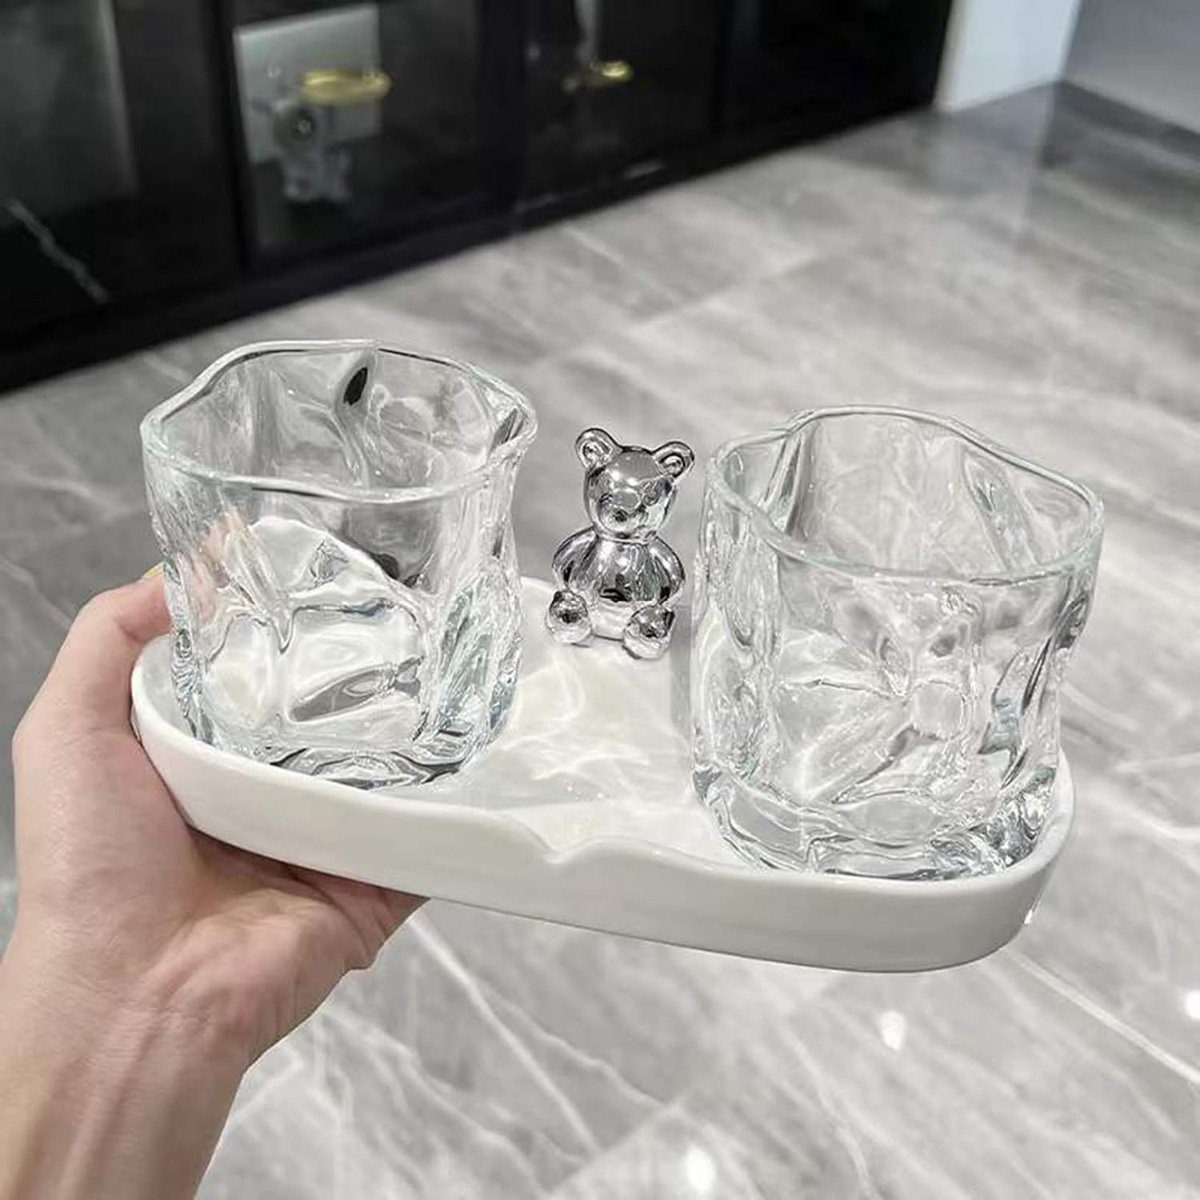 götäzer Zahnputzbecher Mundspülbecher aus Glas, Haushalts-Zahnputzbecher-Reinigungsset, Zwei Tassen + ein Tablett - elegantes Waschtisch-Set Bär Weiss